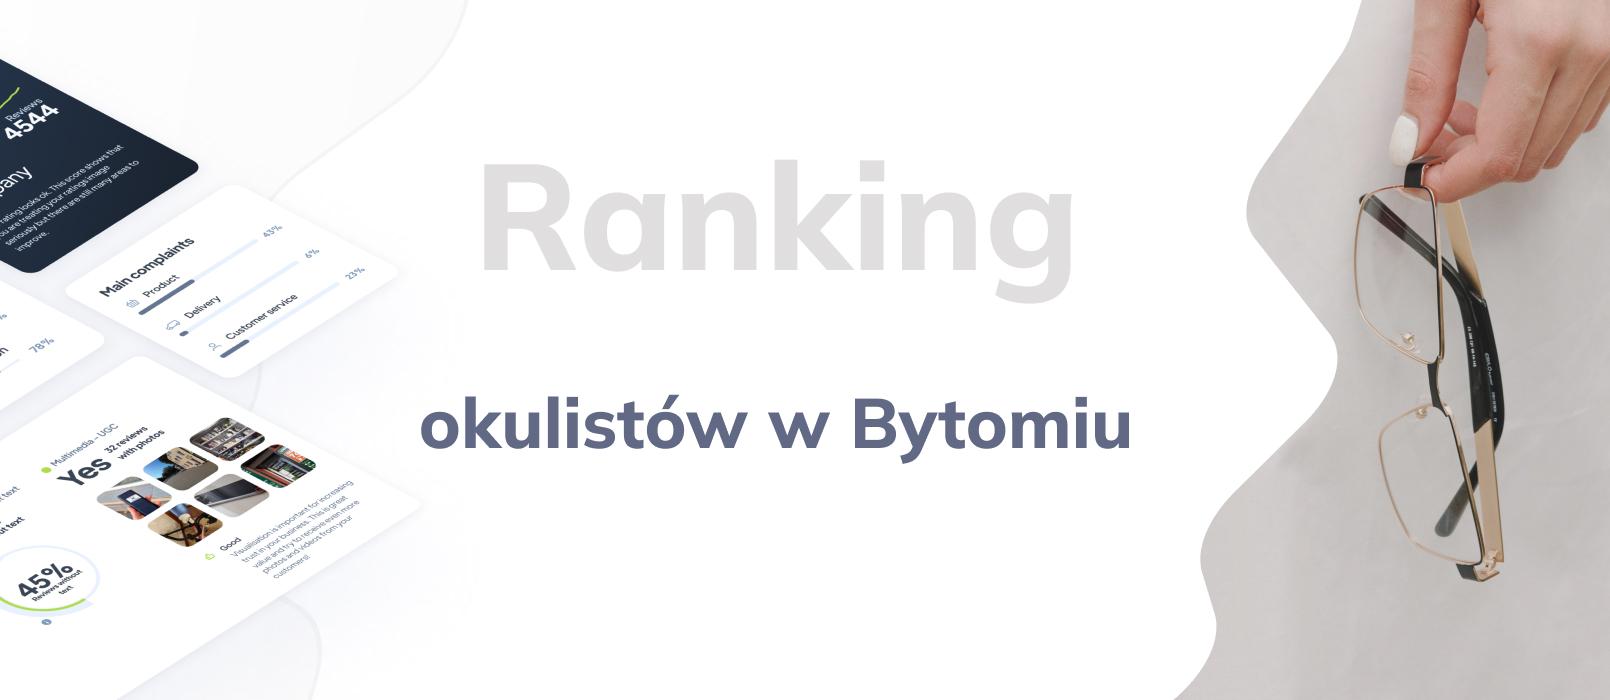 Okulista w Bytomiu - ranking TOP 10